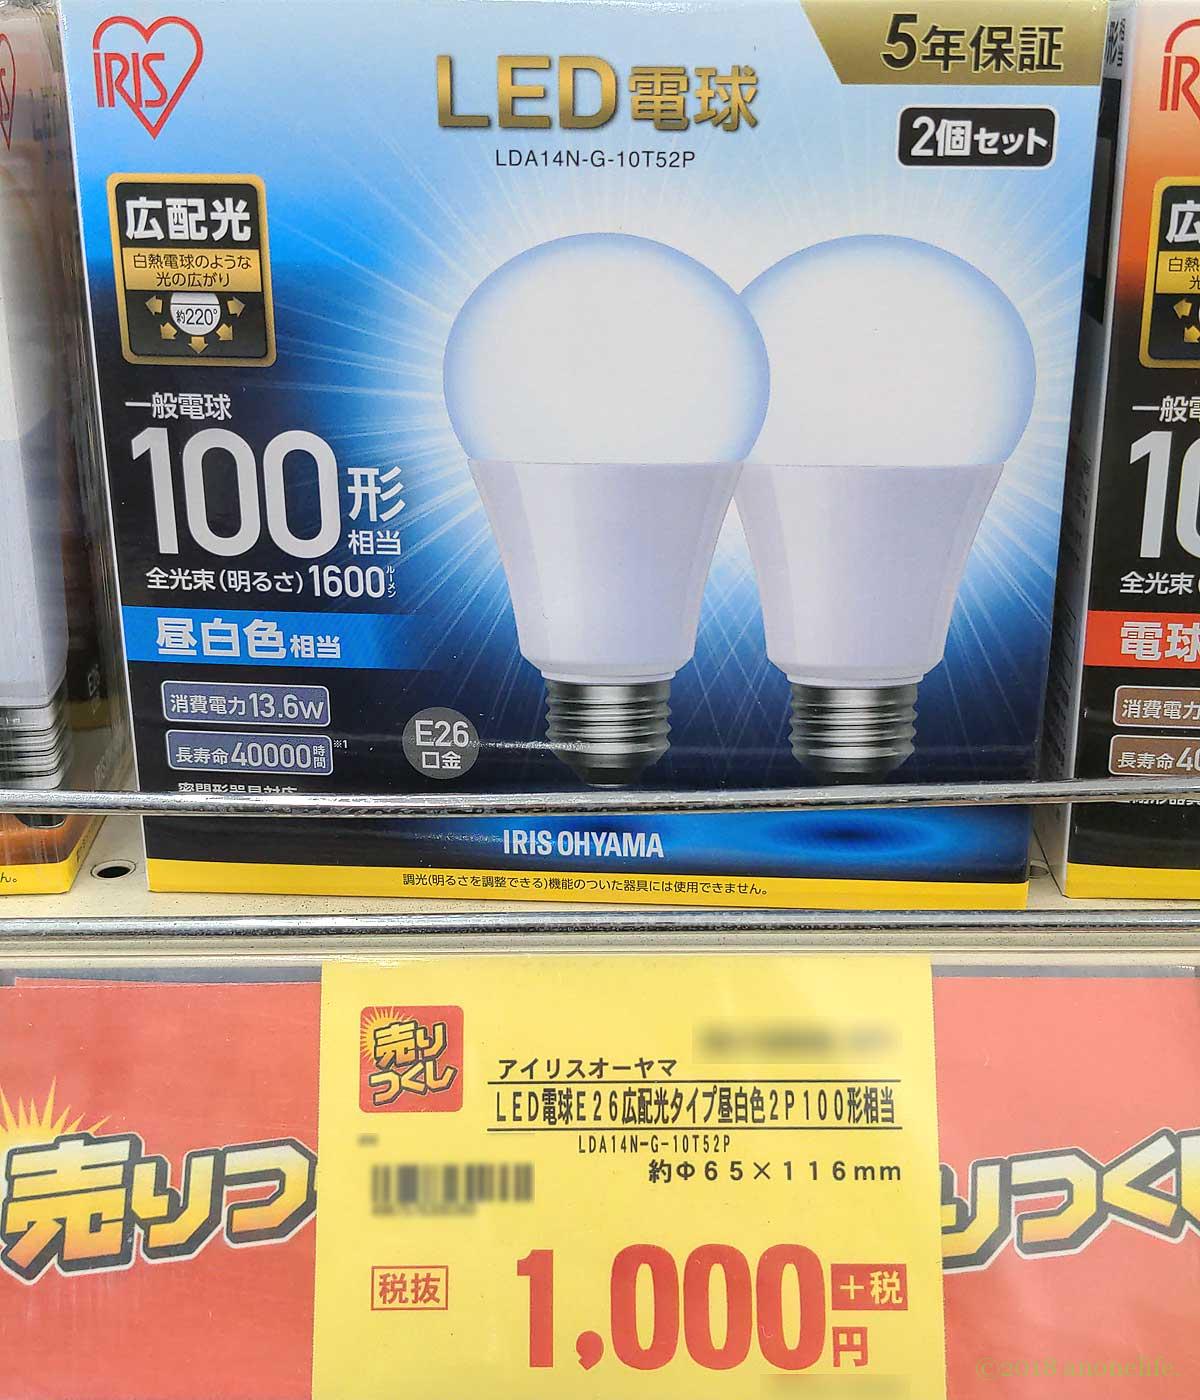 アイリスオーヤマ100W相当LED電球昼白色【LDA14N-G-10T5】レビュー | あのねライフ